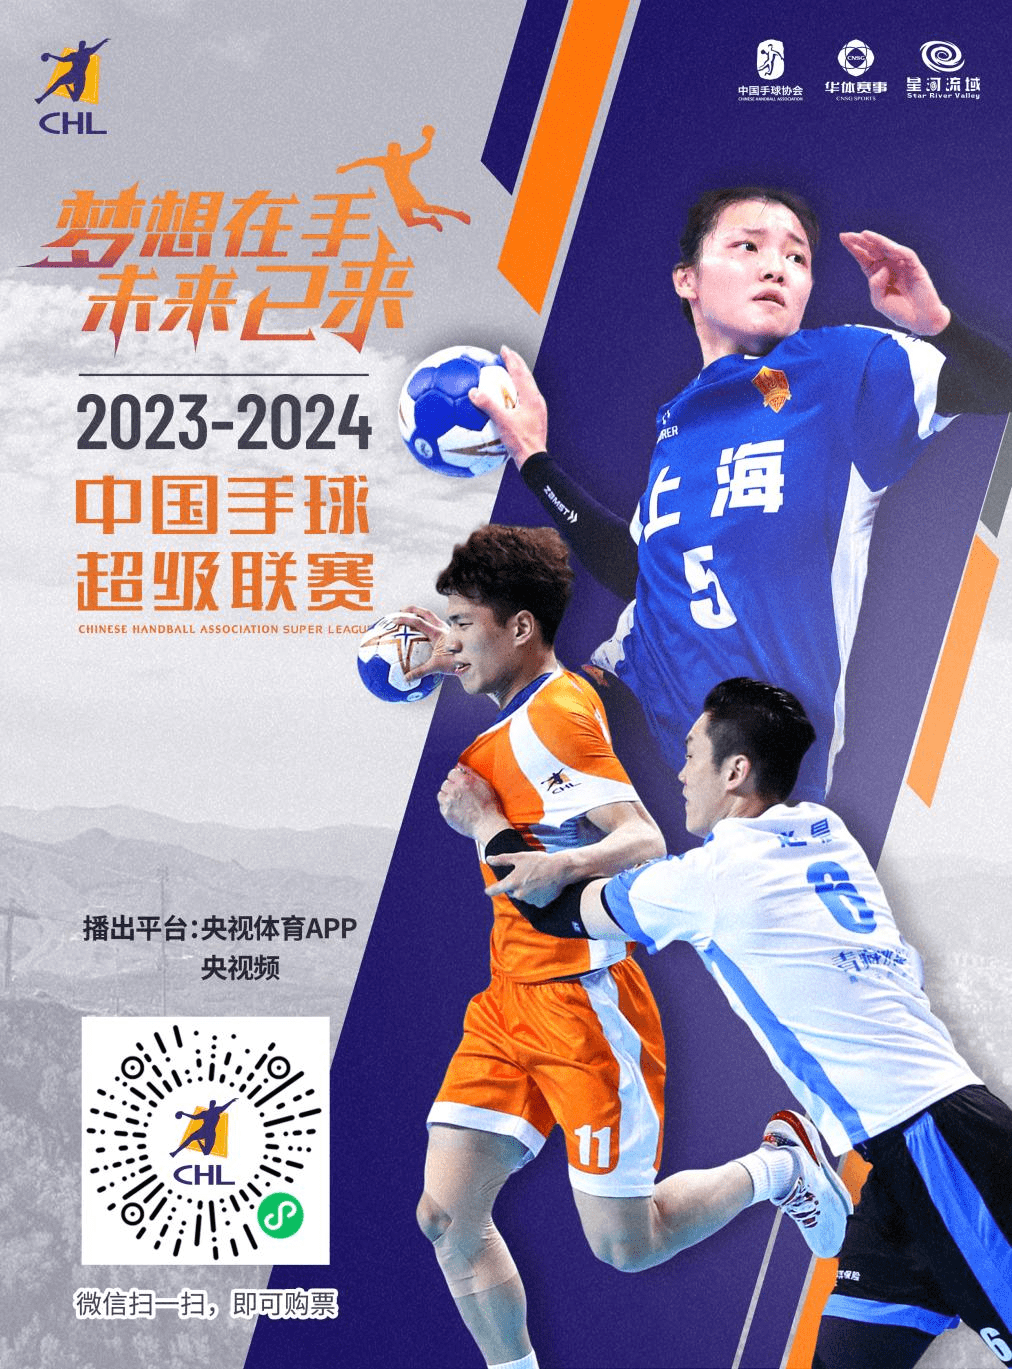 【九球体育】中国手球超级联赛苏州站正式开票